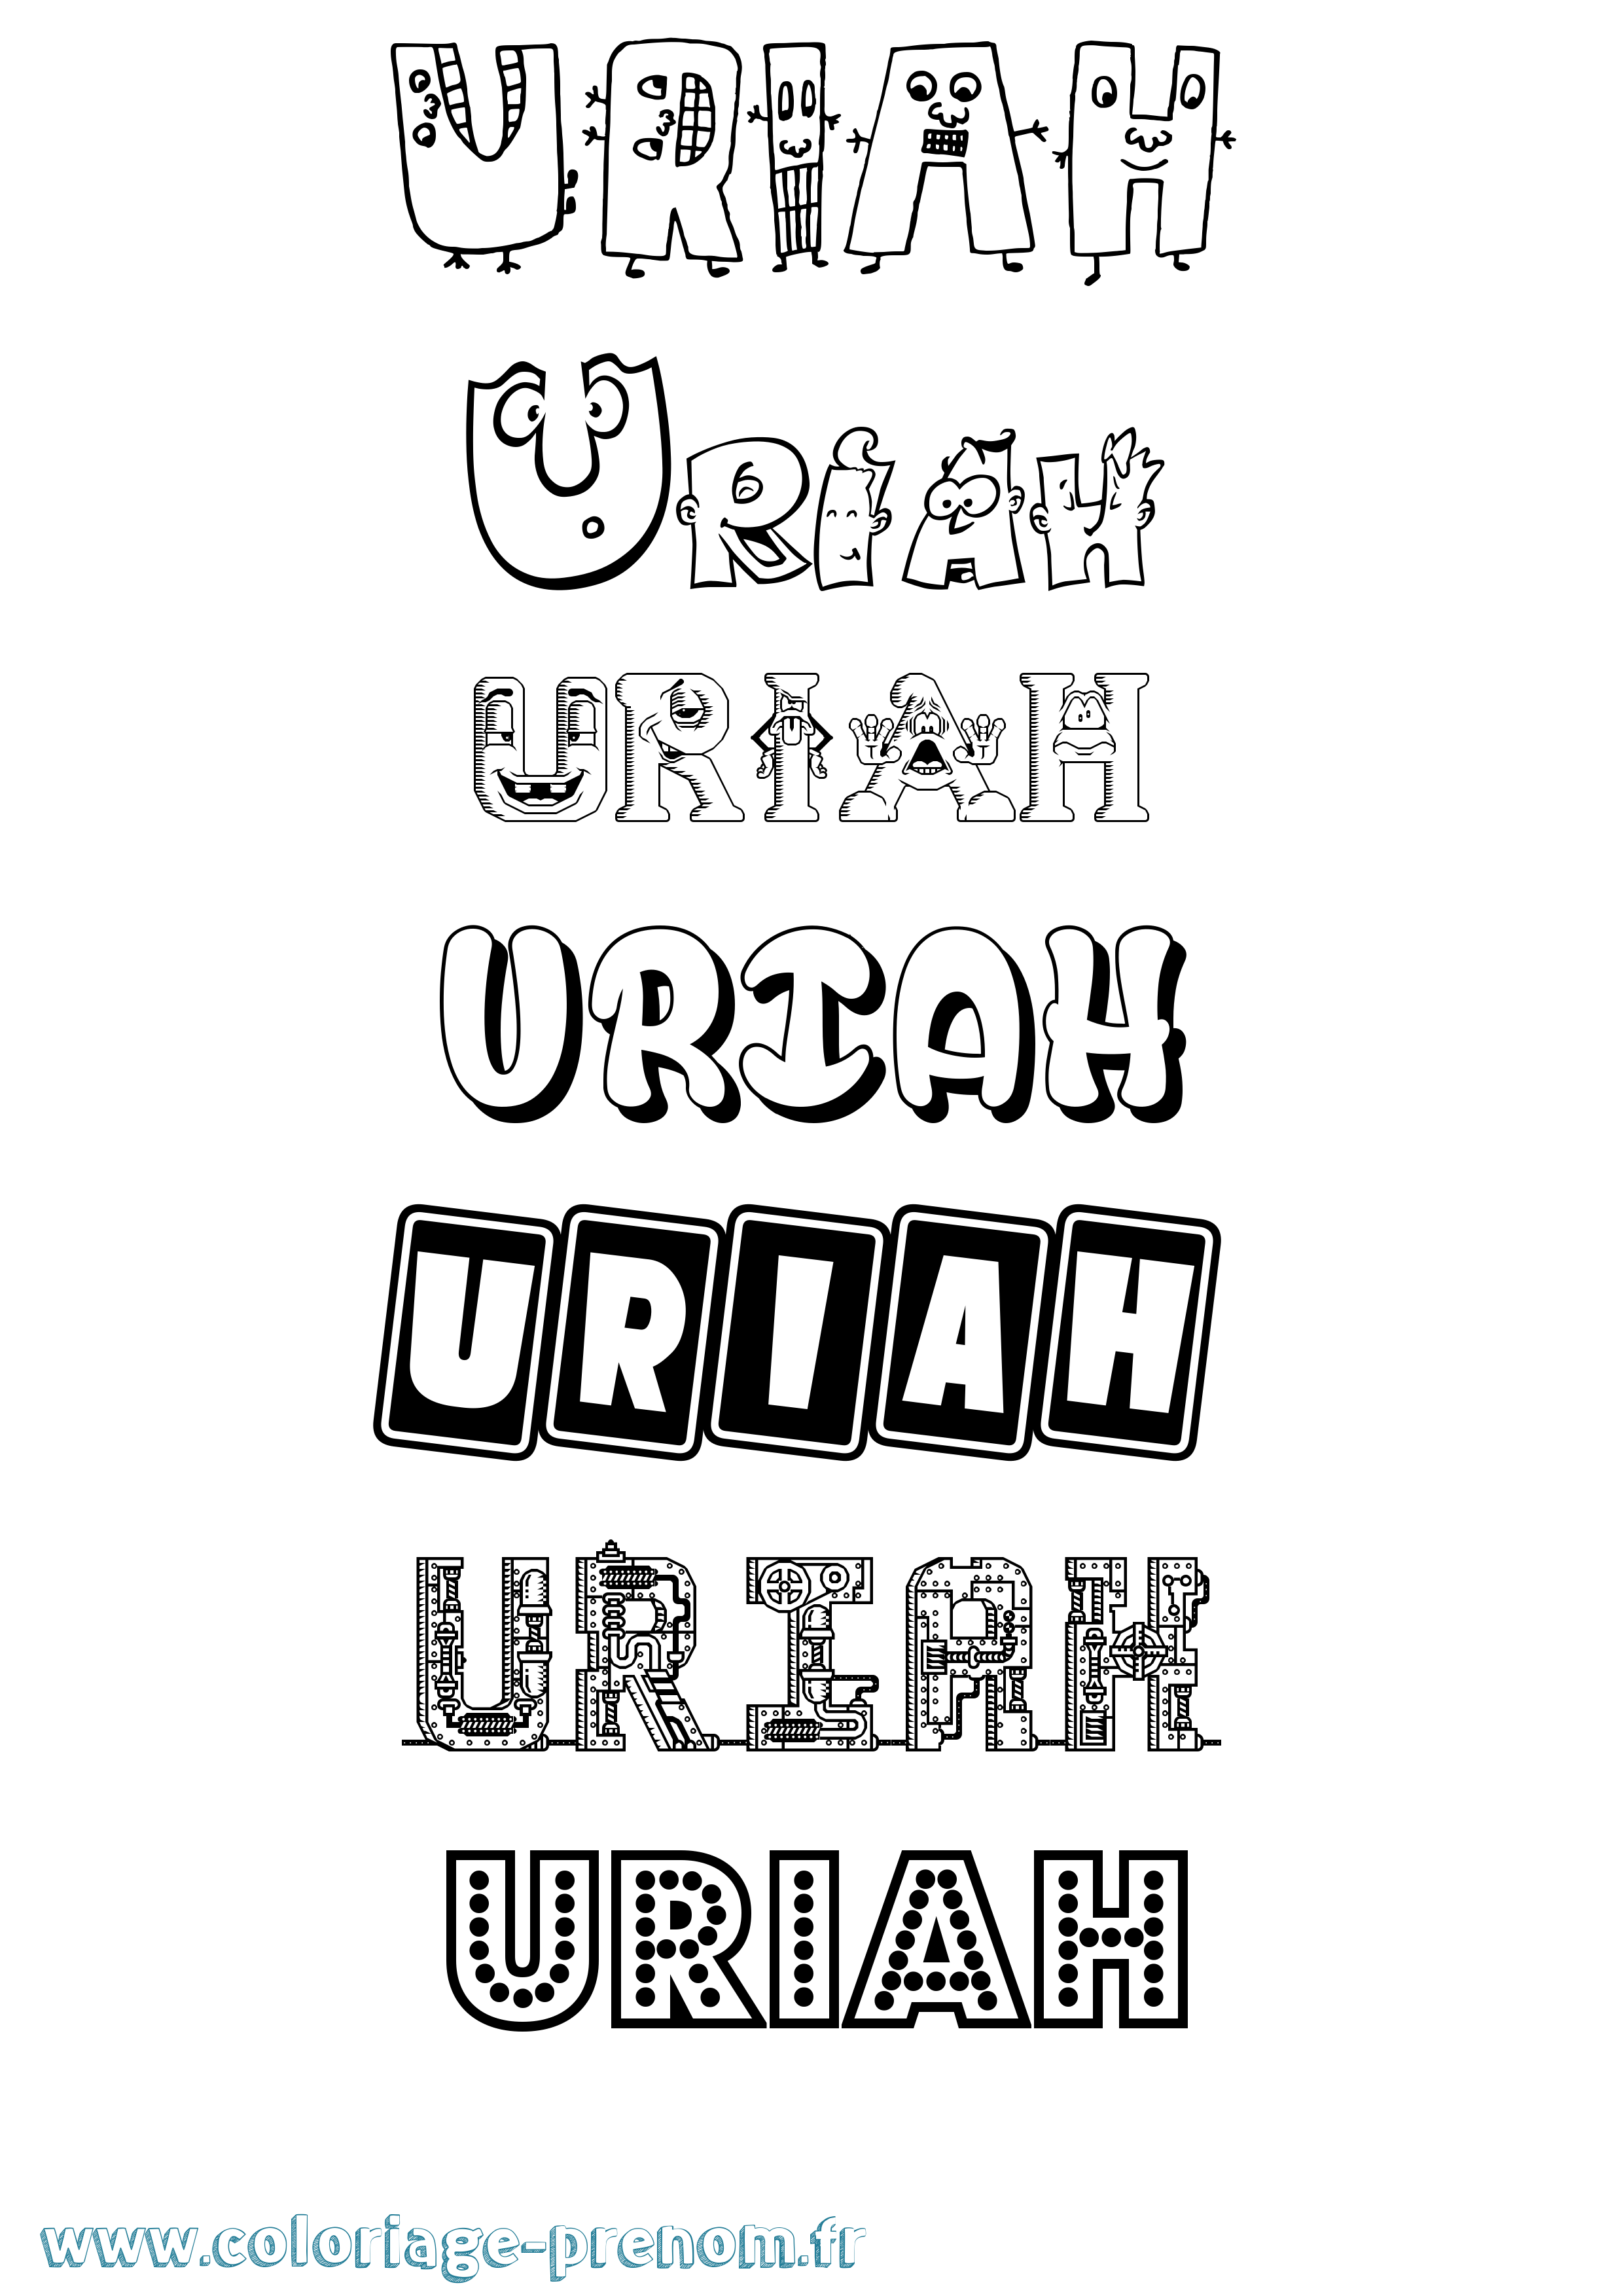 Coloriage prénom Uriah Fun